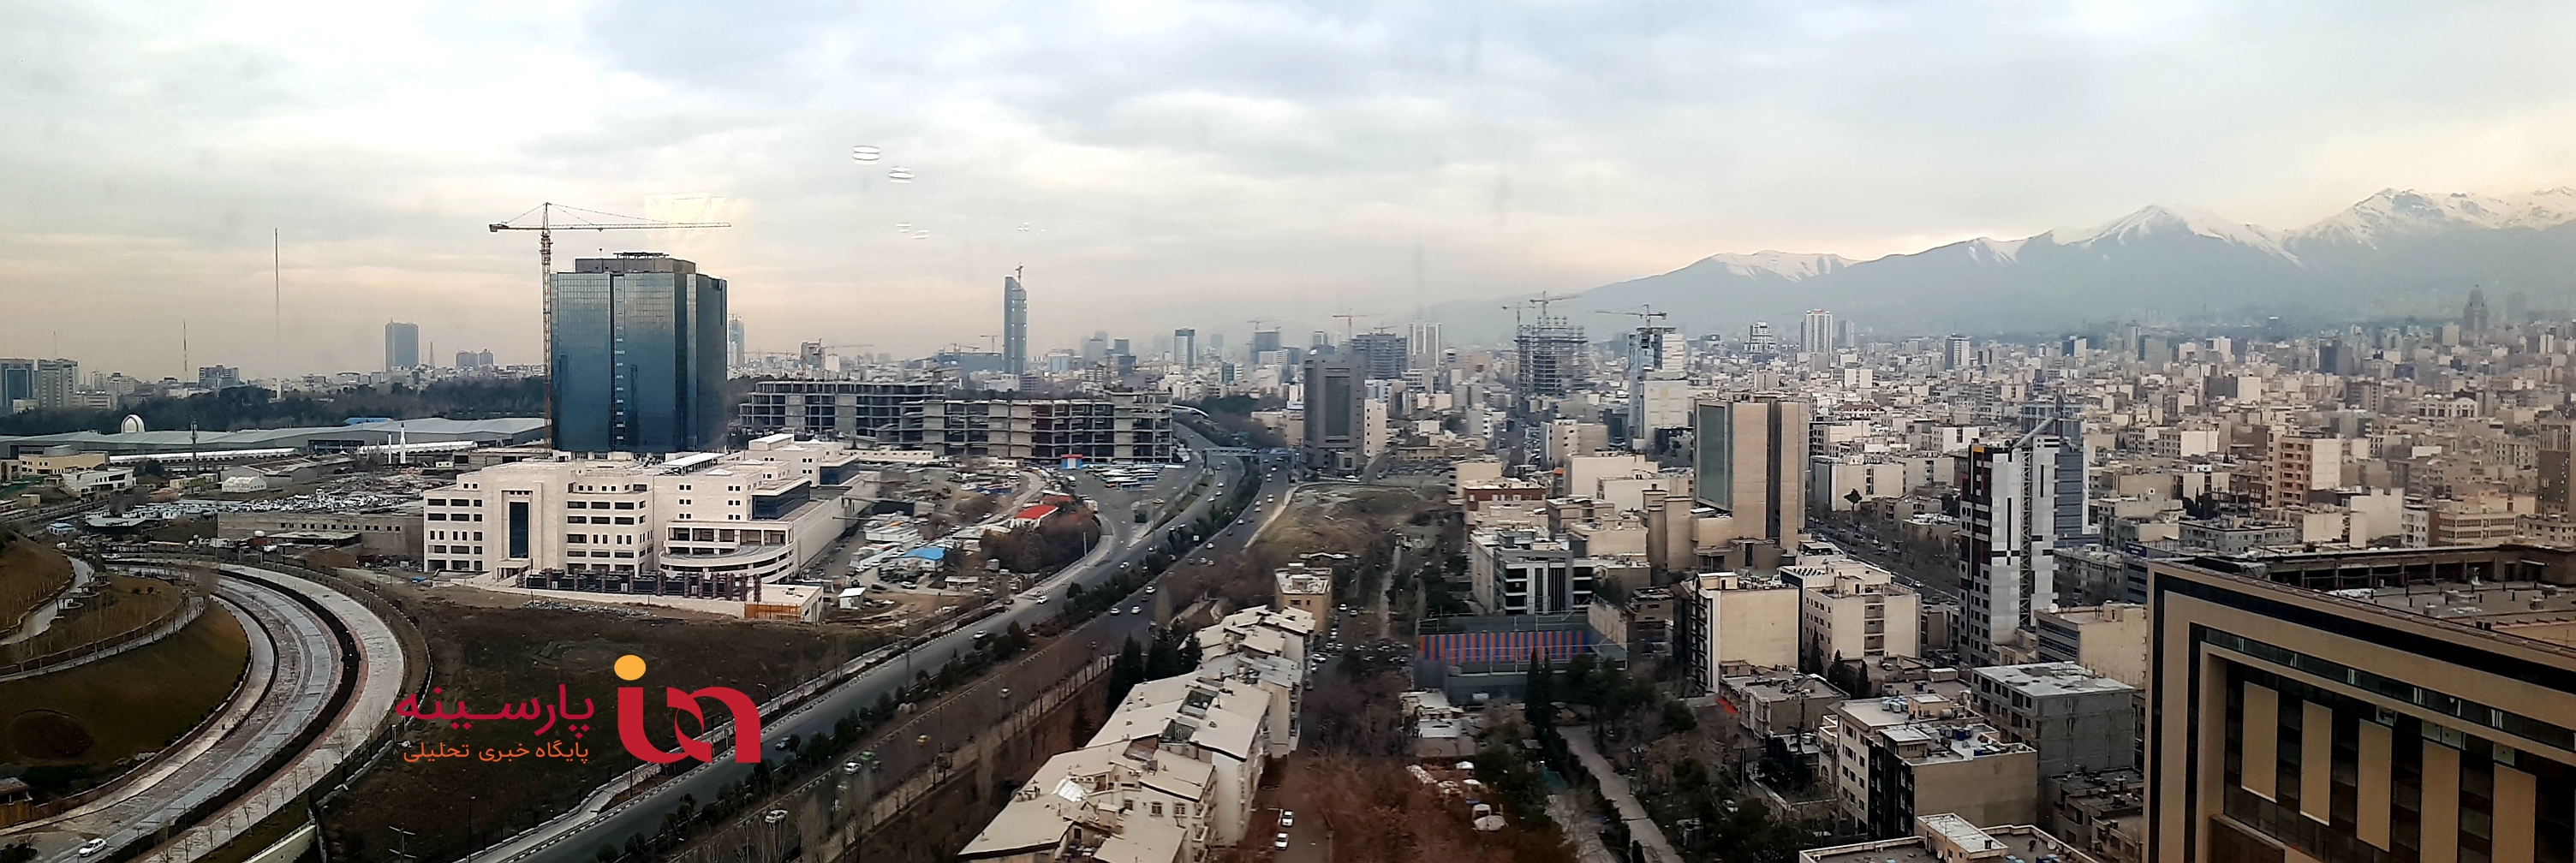 نمای جالب از شرق و غرب تهران از طبقه ۱۸ بانک مرکزی